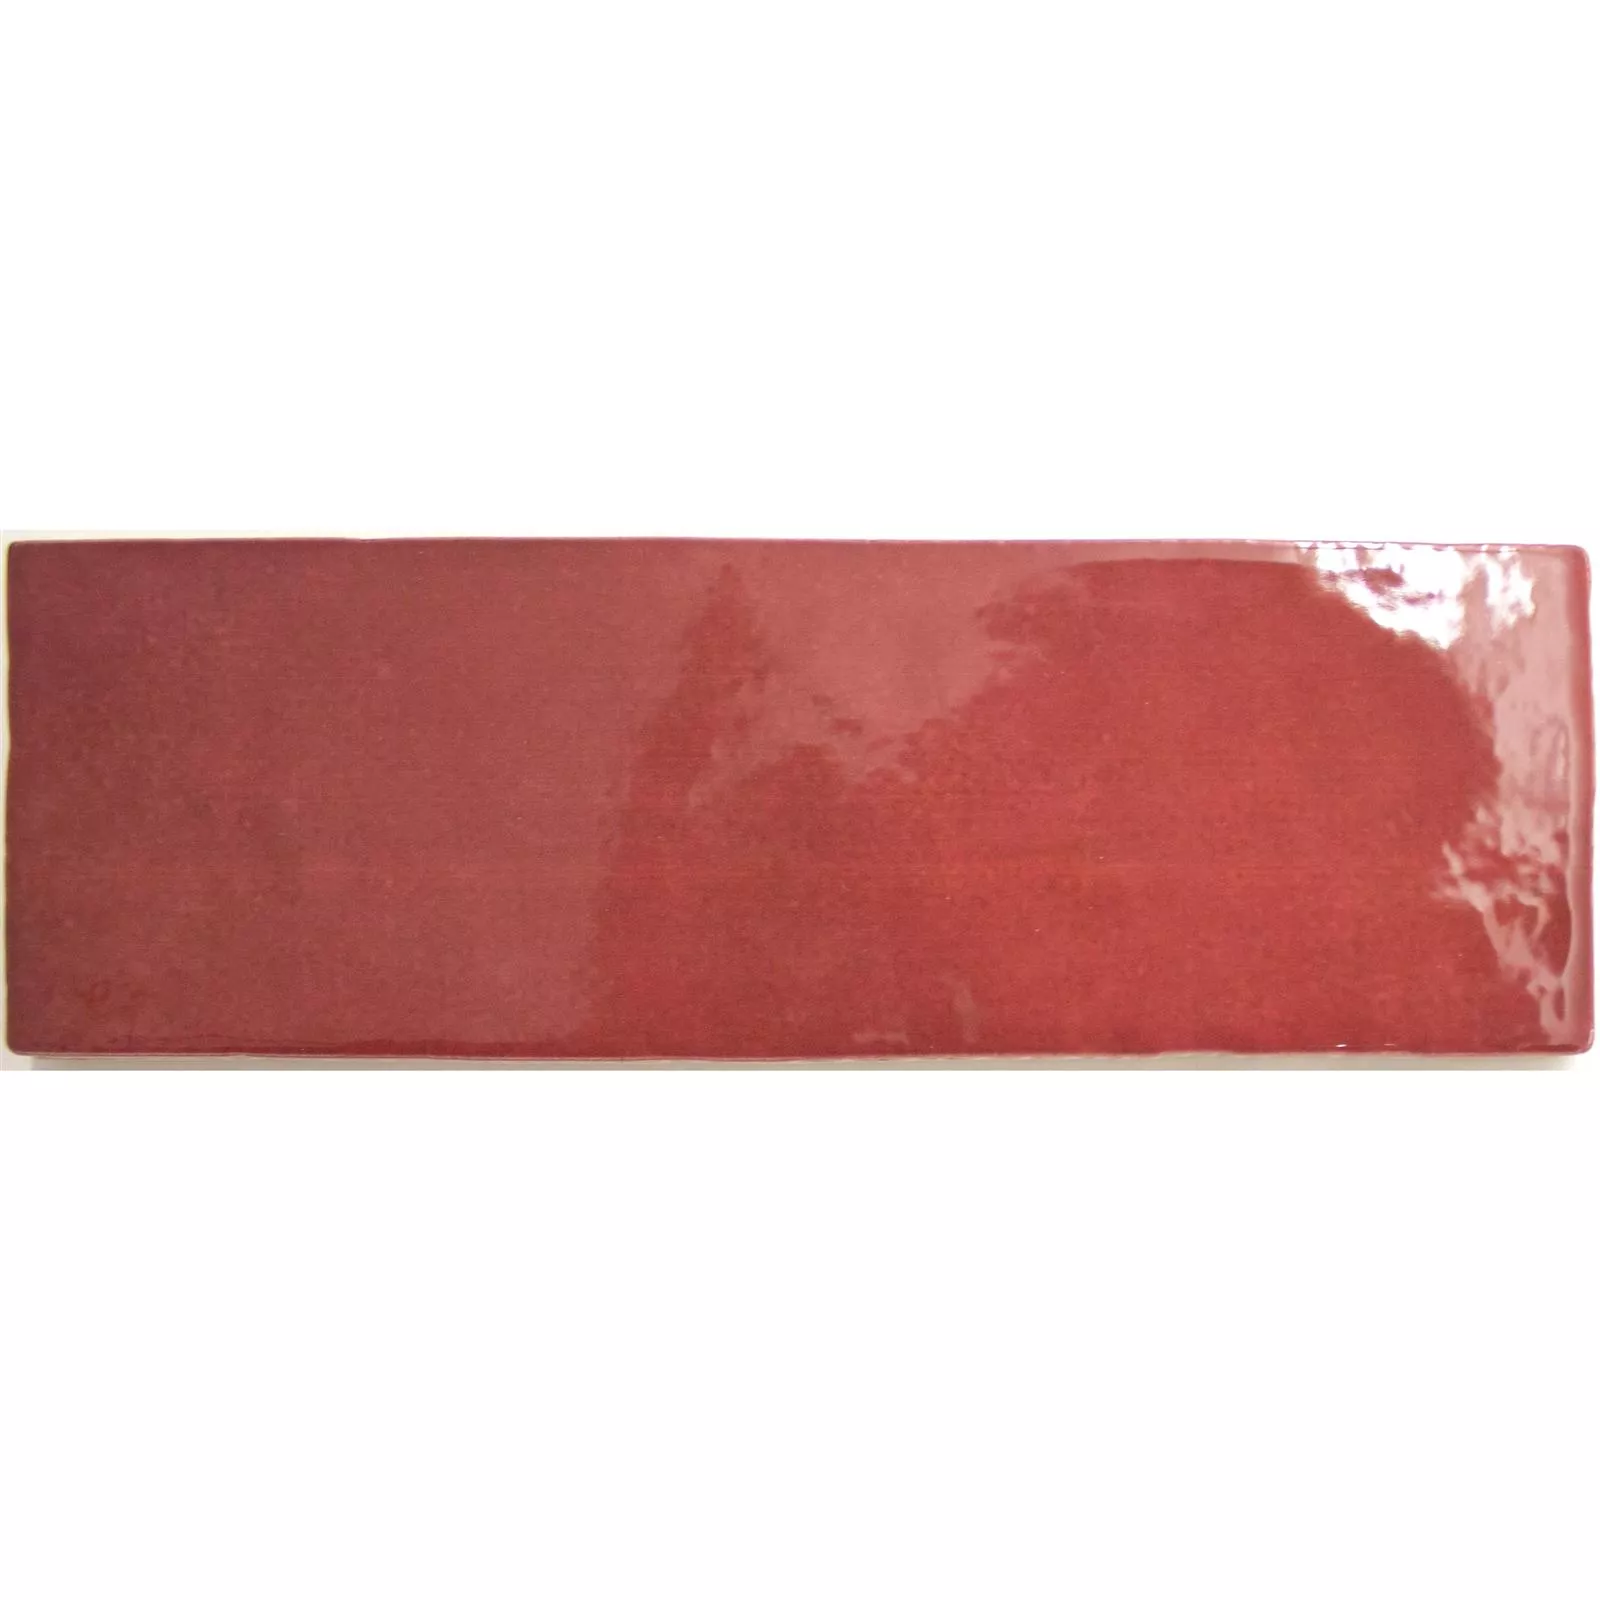 Πλακάκια Tοίχου Concord Κυματική Οπτική Kόκκινο 6,5x20cm